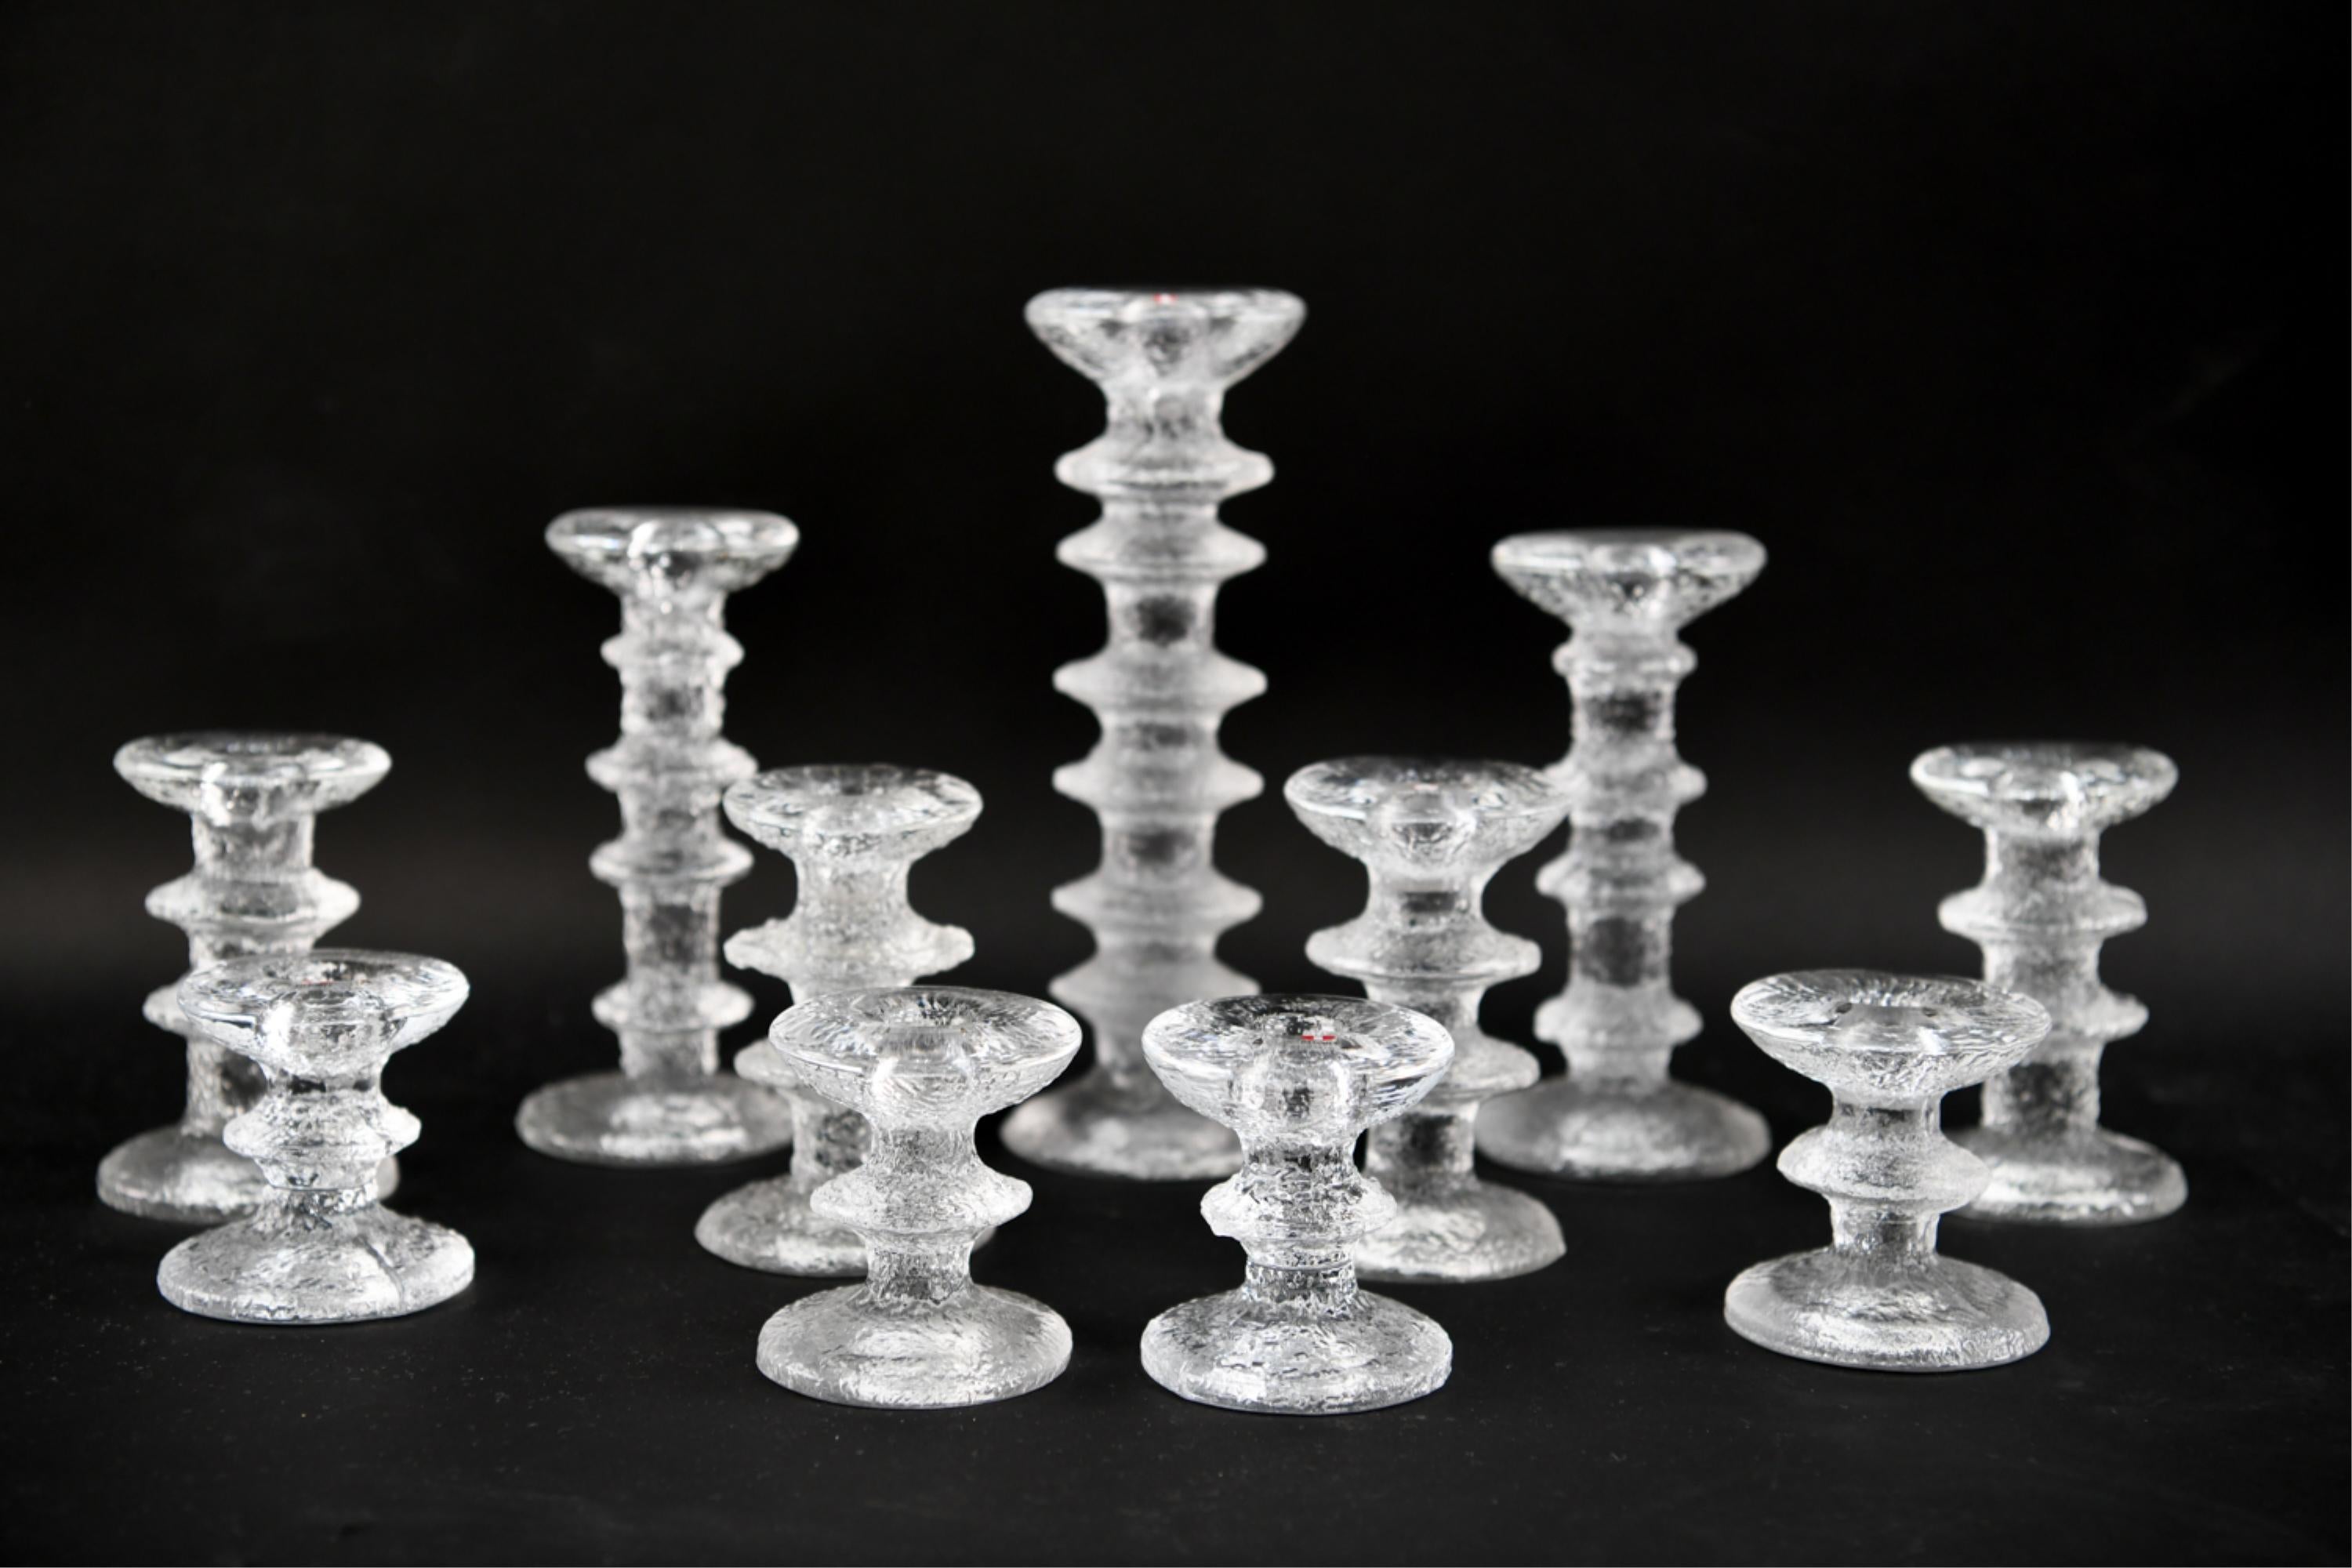 Toller Satz von elf Vintage-Glaskerzenhaltern von Timo Sarpaneva für Iittala.
Sie reichen von 12,5 Zoll bis 5 Zoll Höhe.